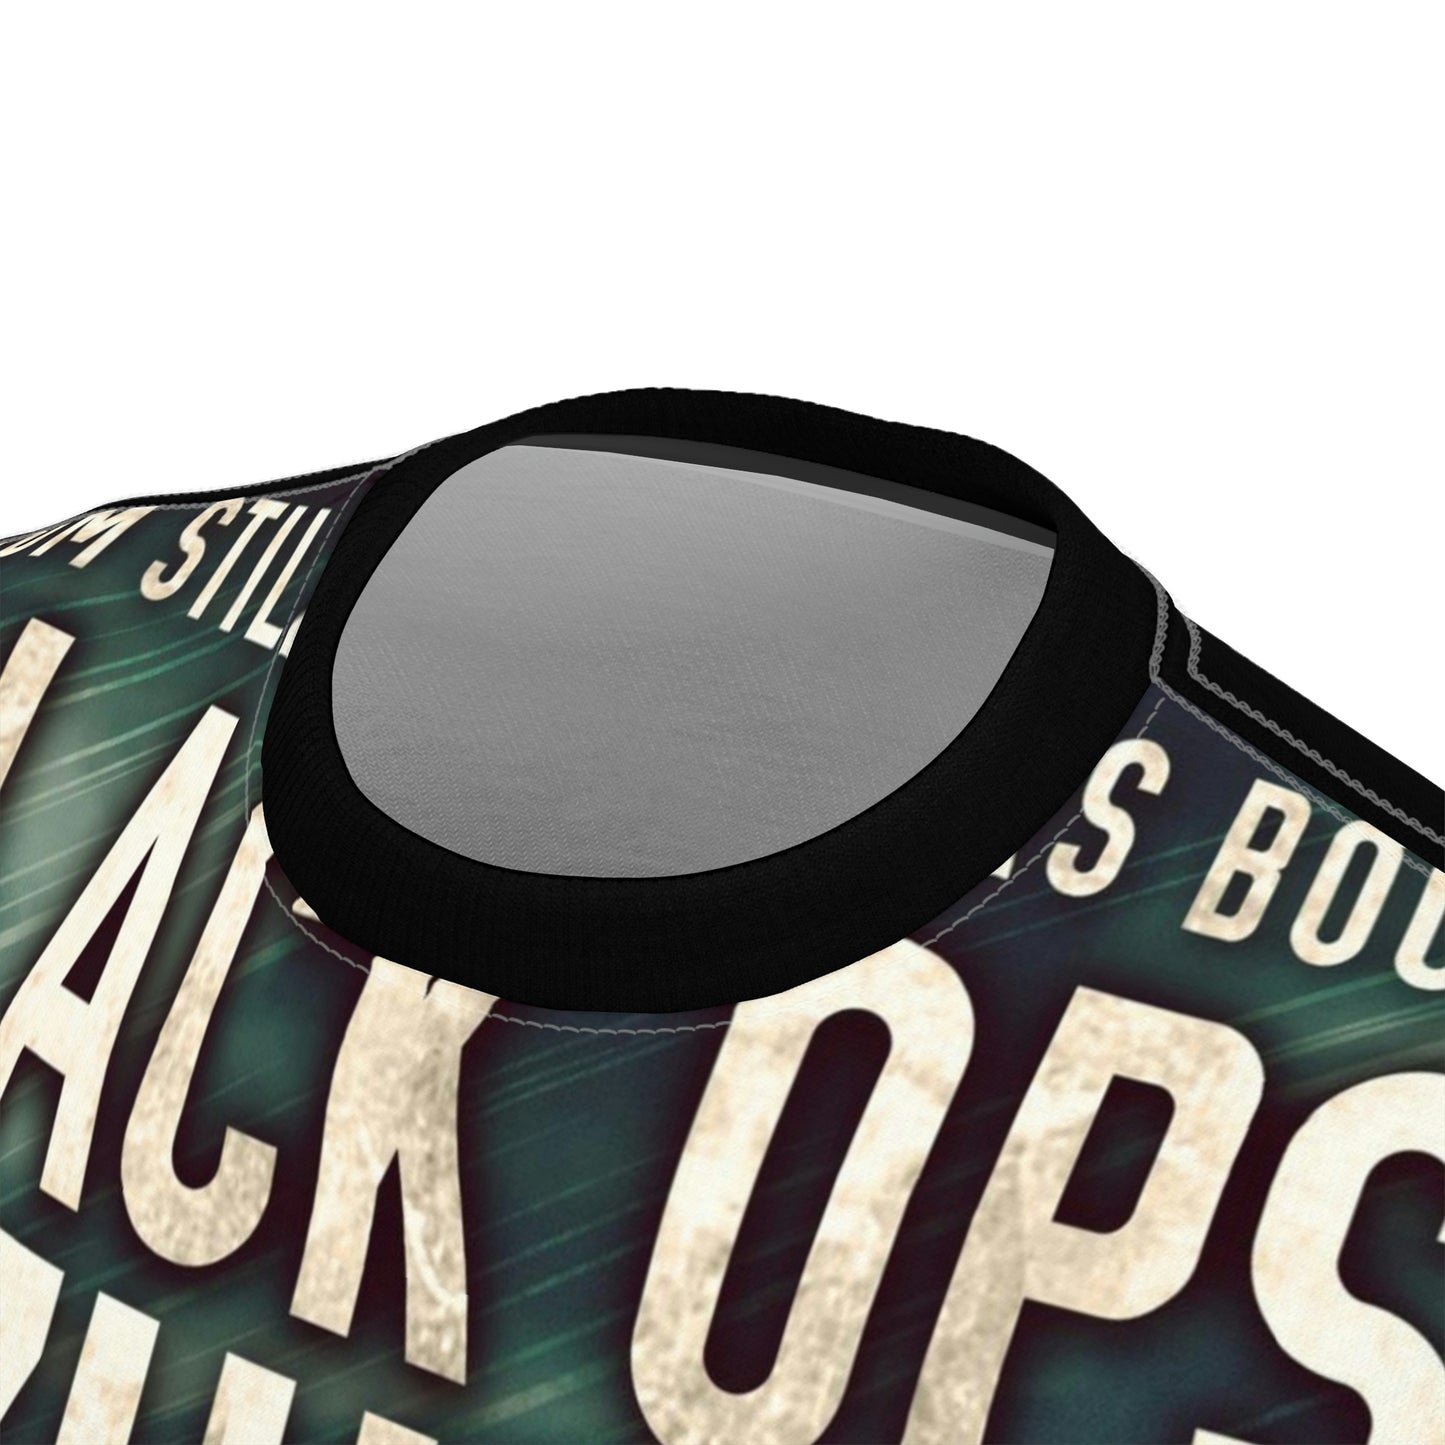 Black Ops: Zulu - Unisex All-Over Print Cut & Sew T-Shirt